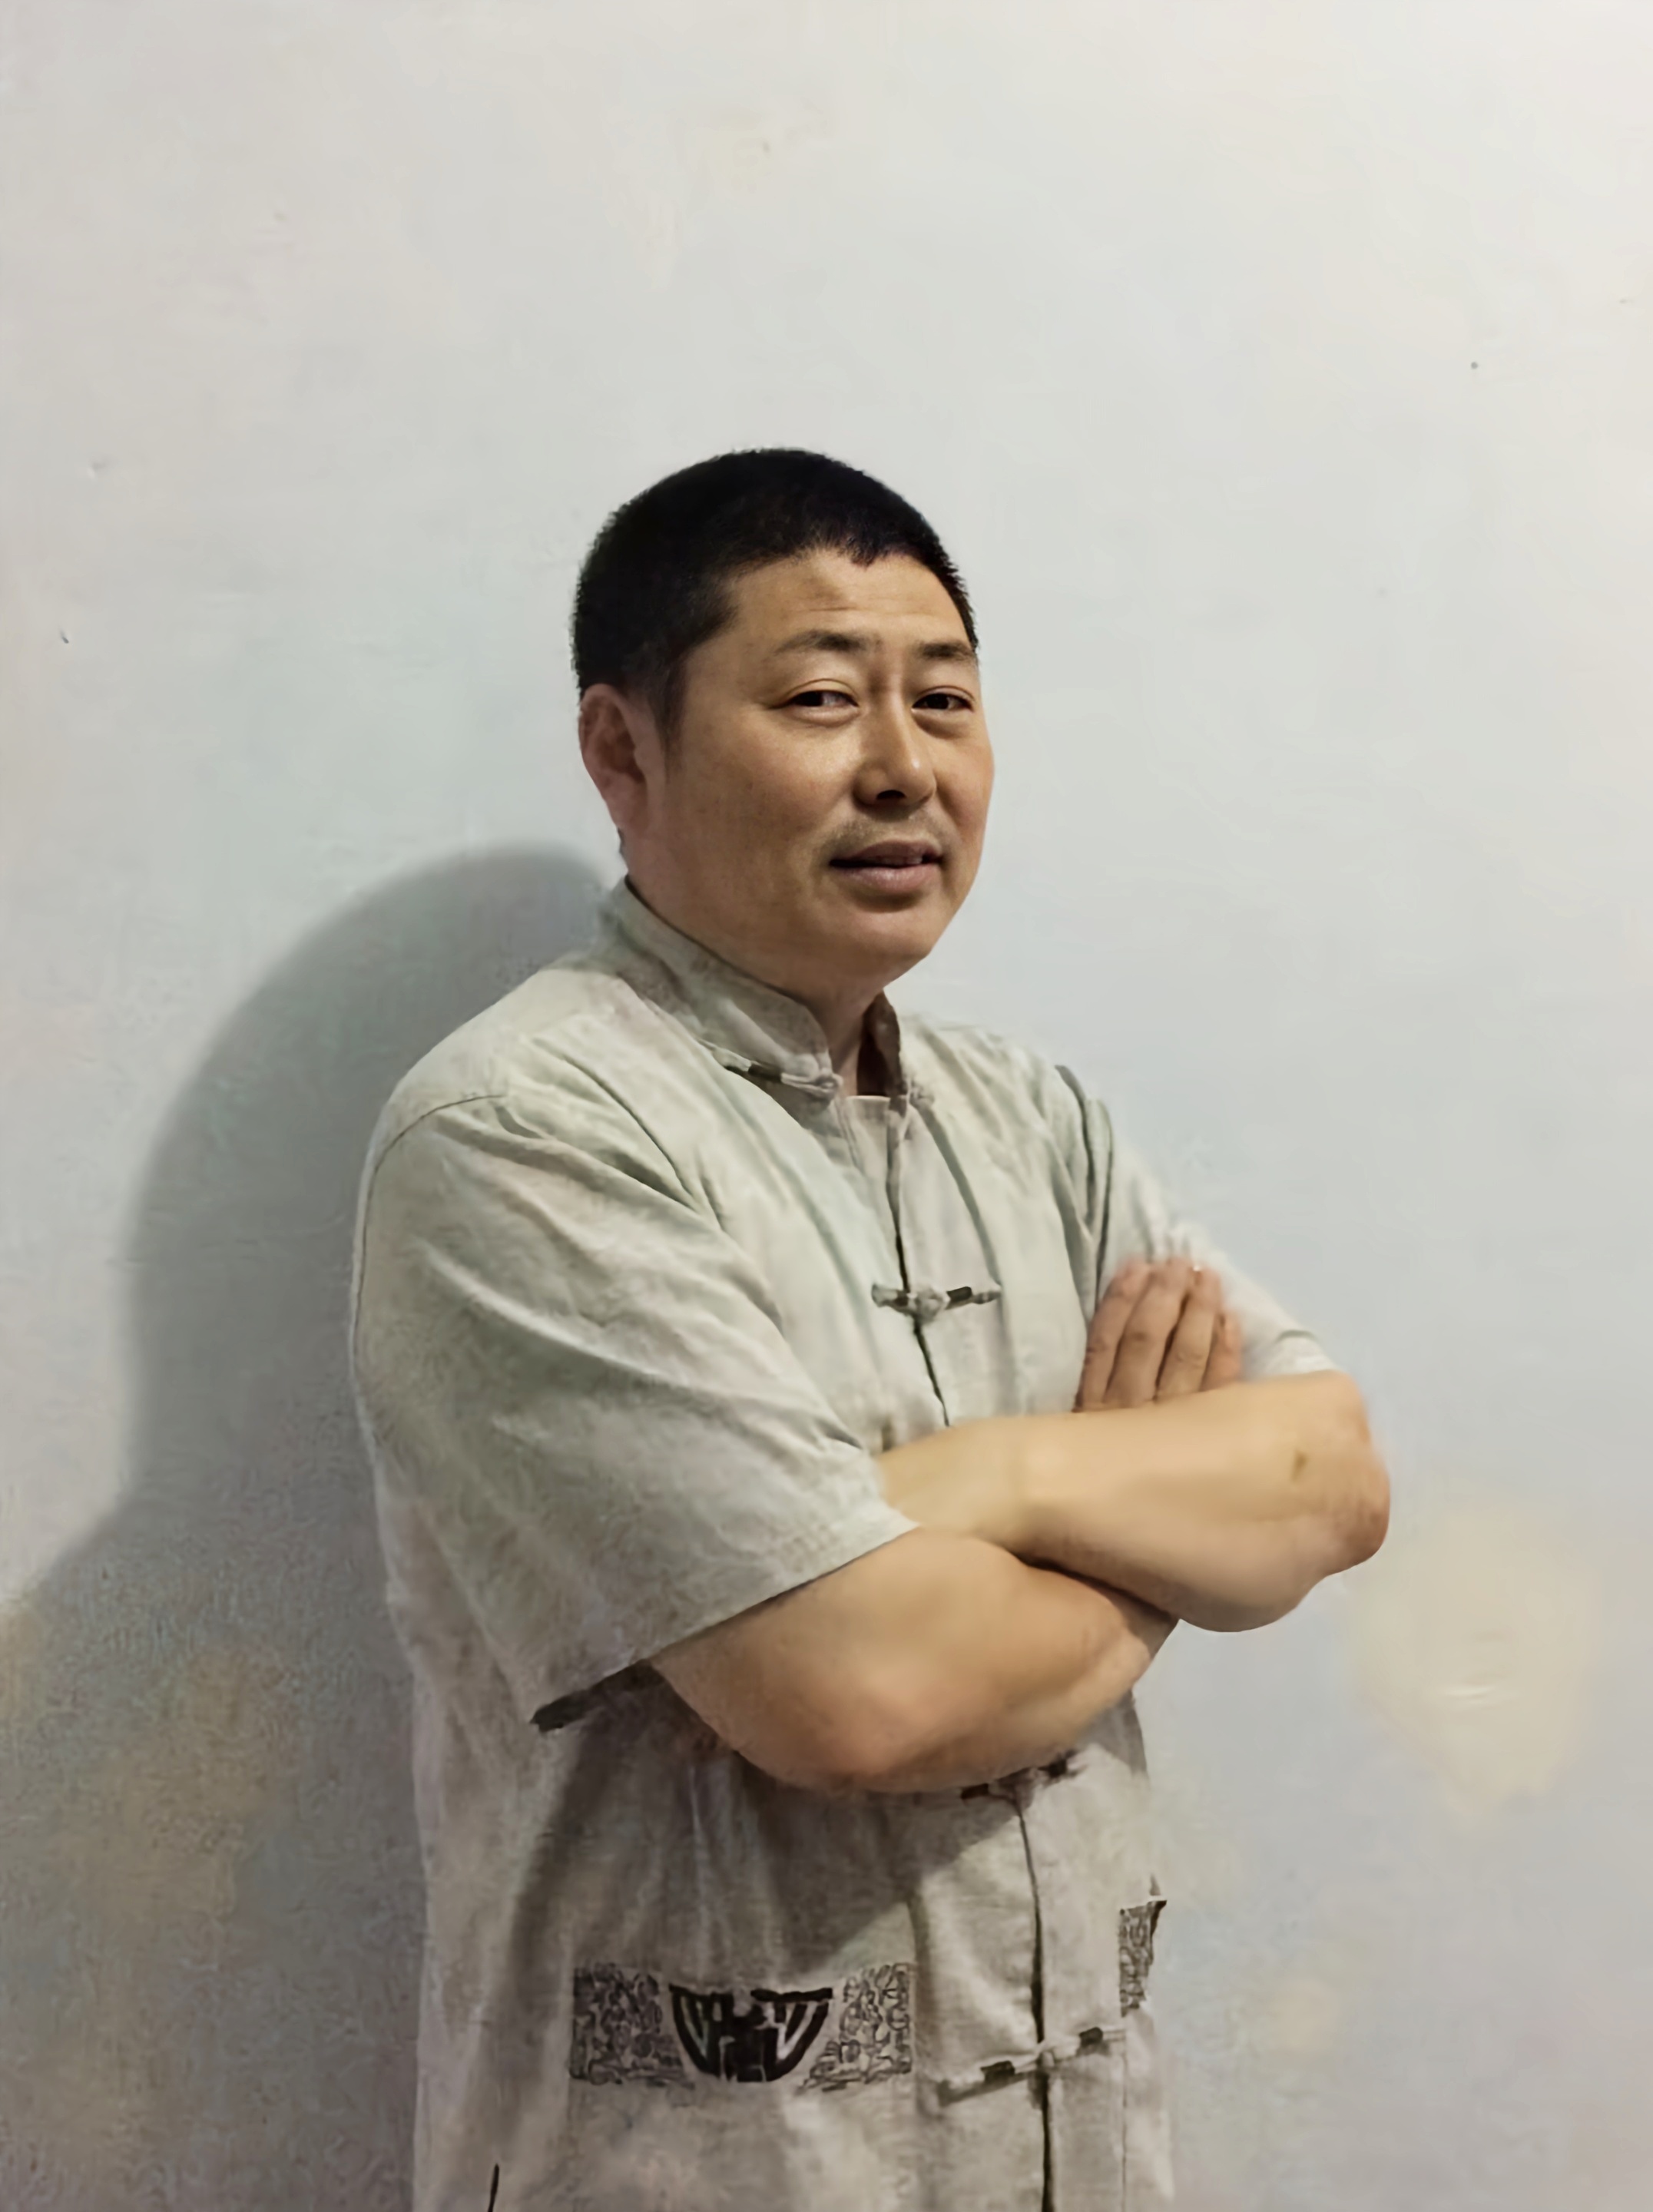 天医养生堂创始人李玉龙入驻全球影响力时代华人网